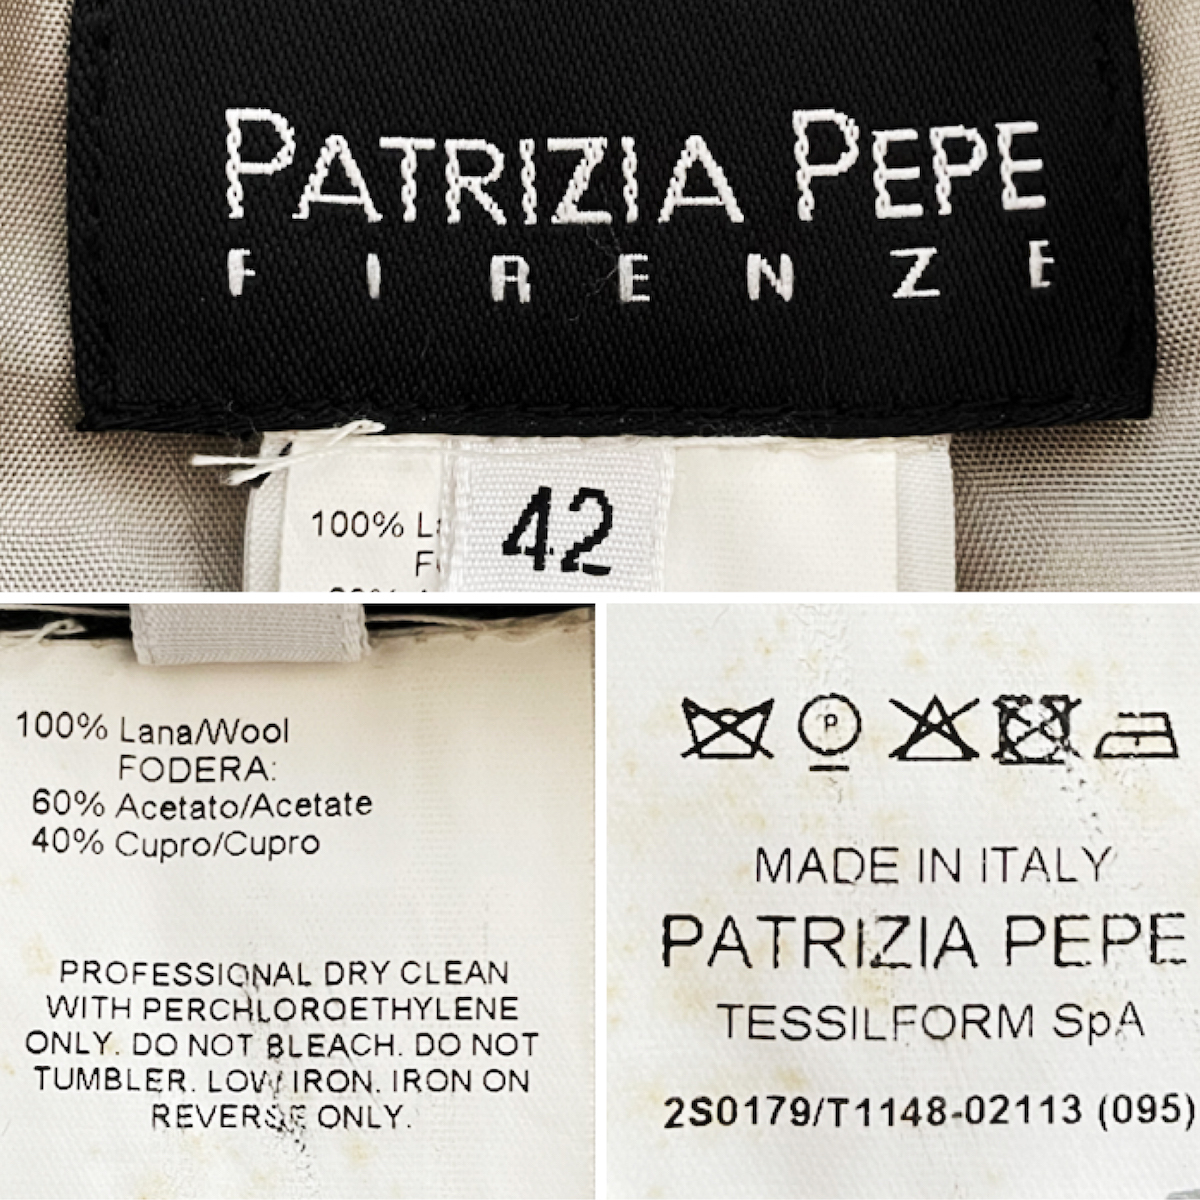 PATRIZIA PEPE 変形 グレン チェック 柄 テーラードジャケット 総柄 ショート丈 グレー ベージュ ウール ツイード パトリツィアペペ 7号 42